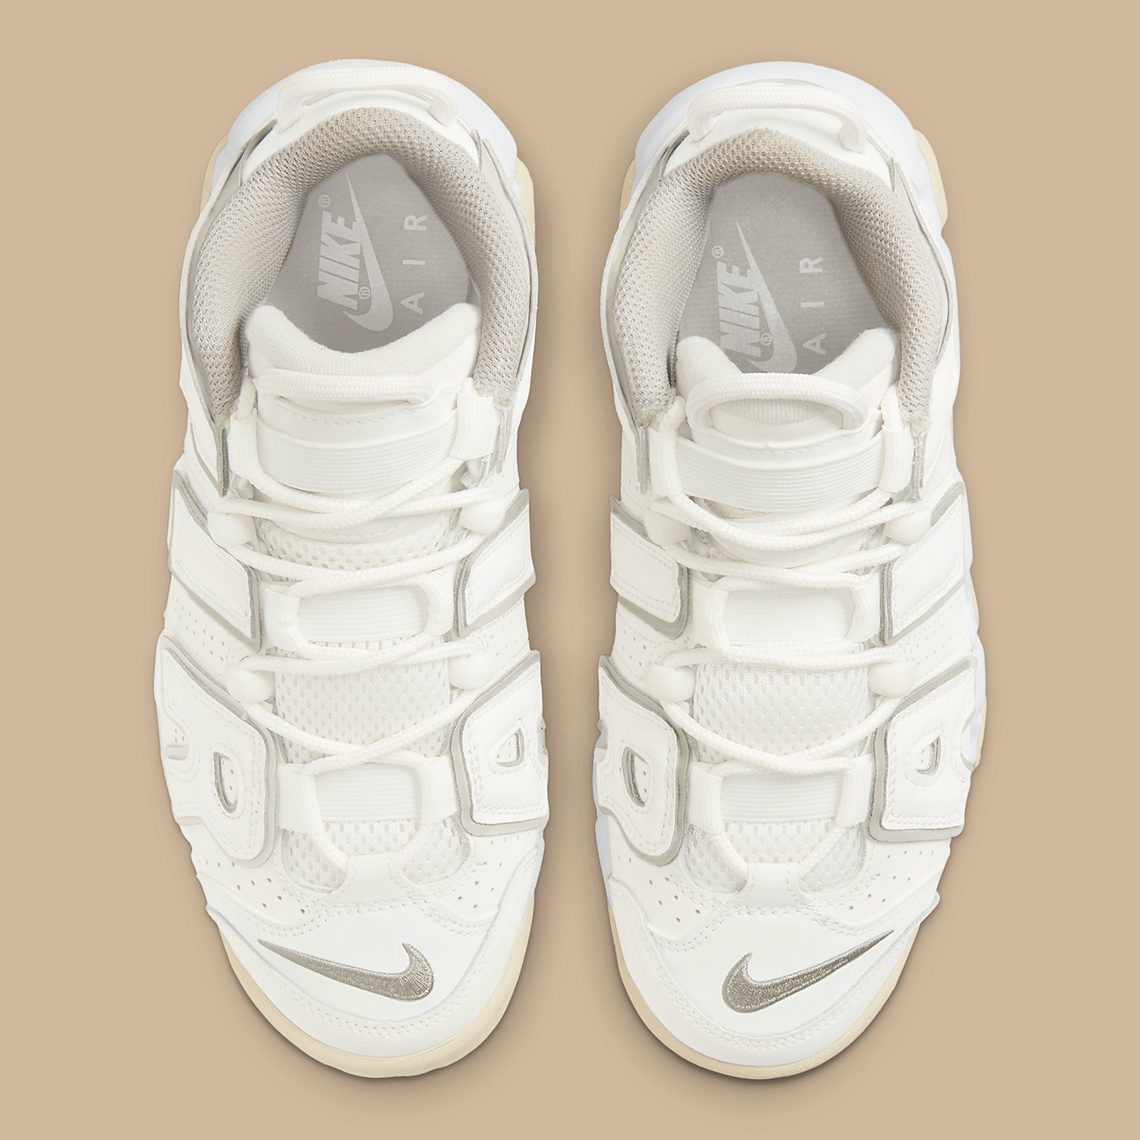 Nike Air More Uptempo White GS DM1023-001 Release Info | SneakerNews.com